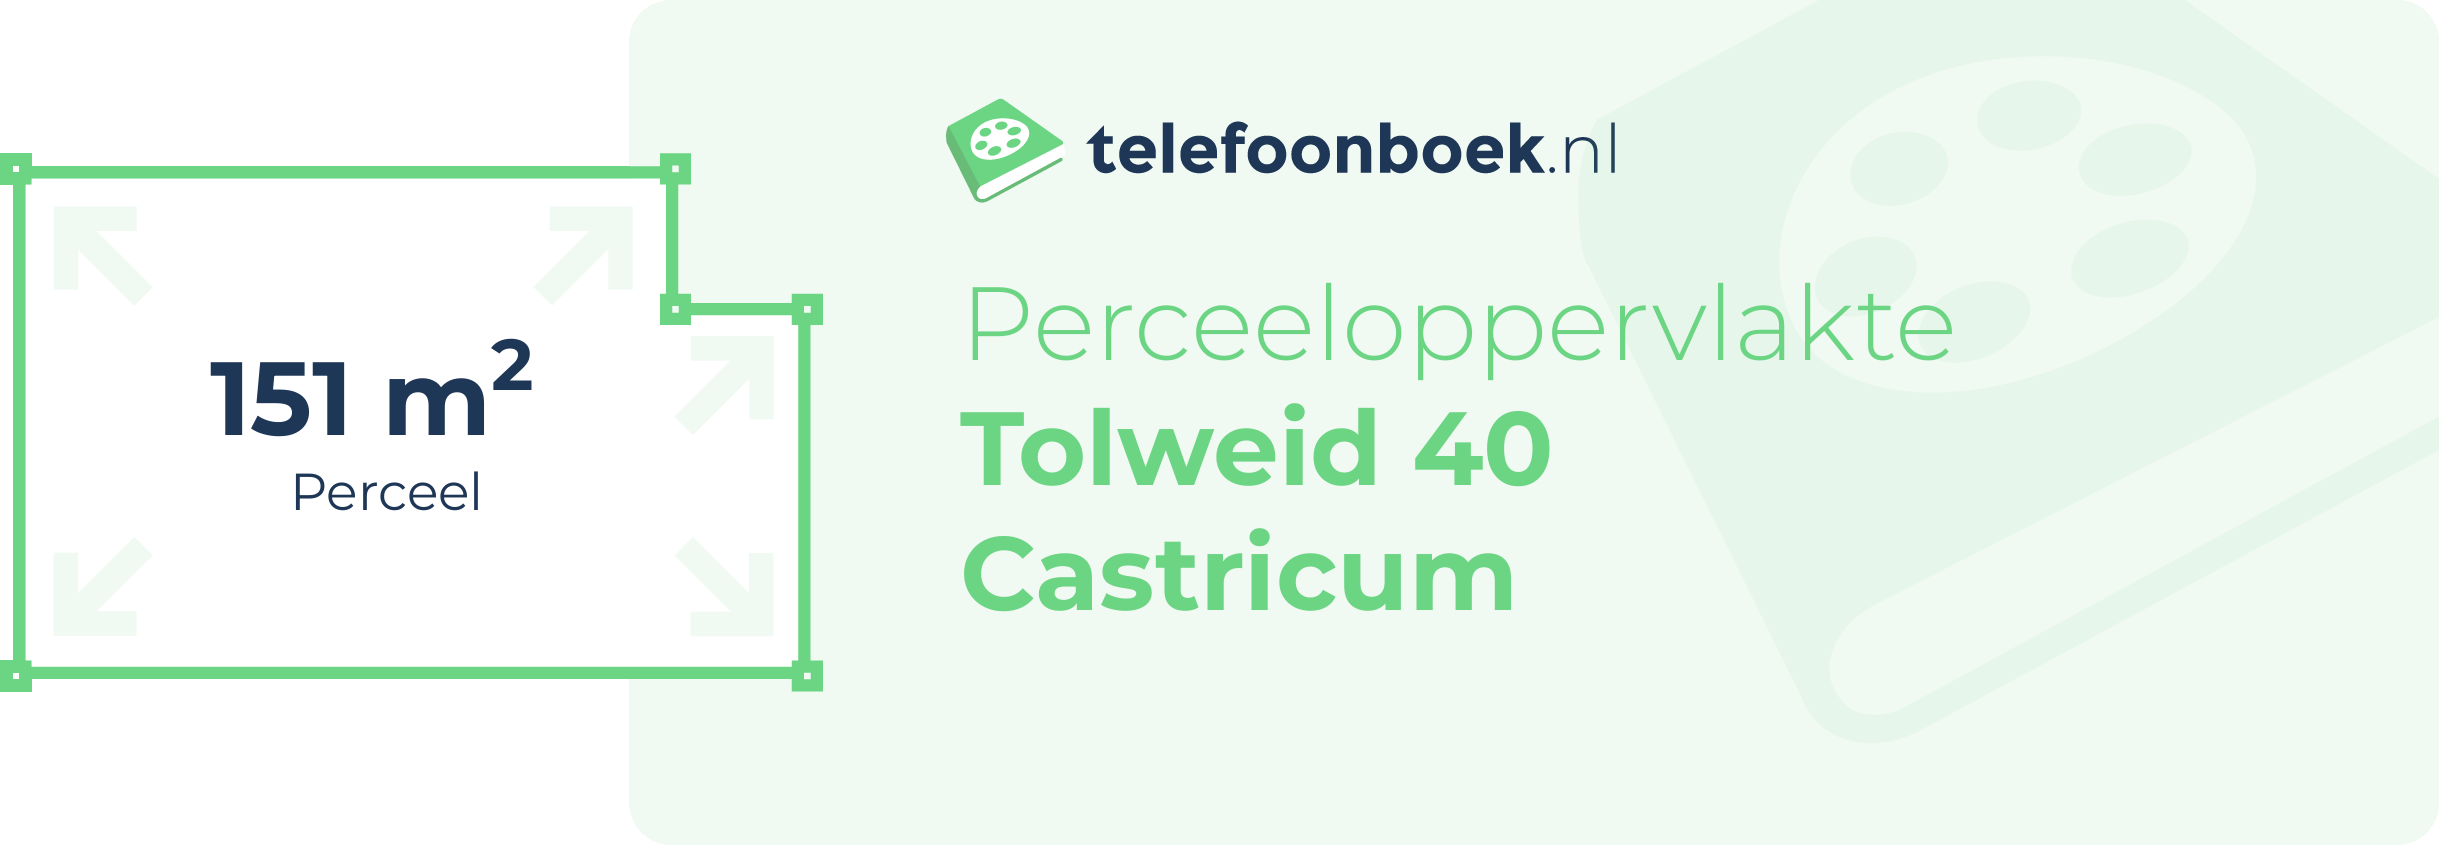 Perceeloppervlakte Tolweid 40 Castricum